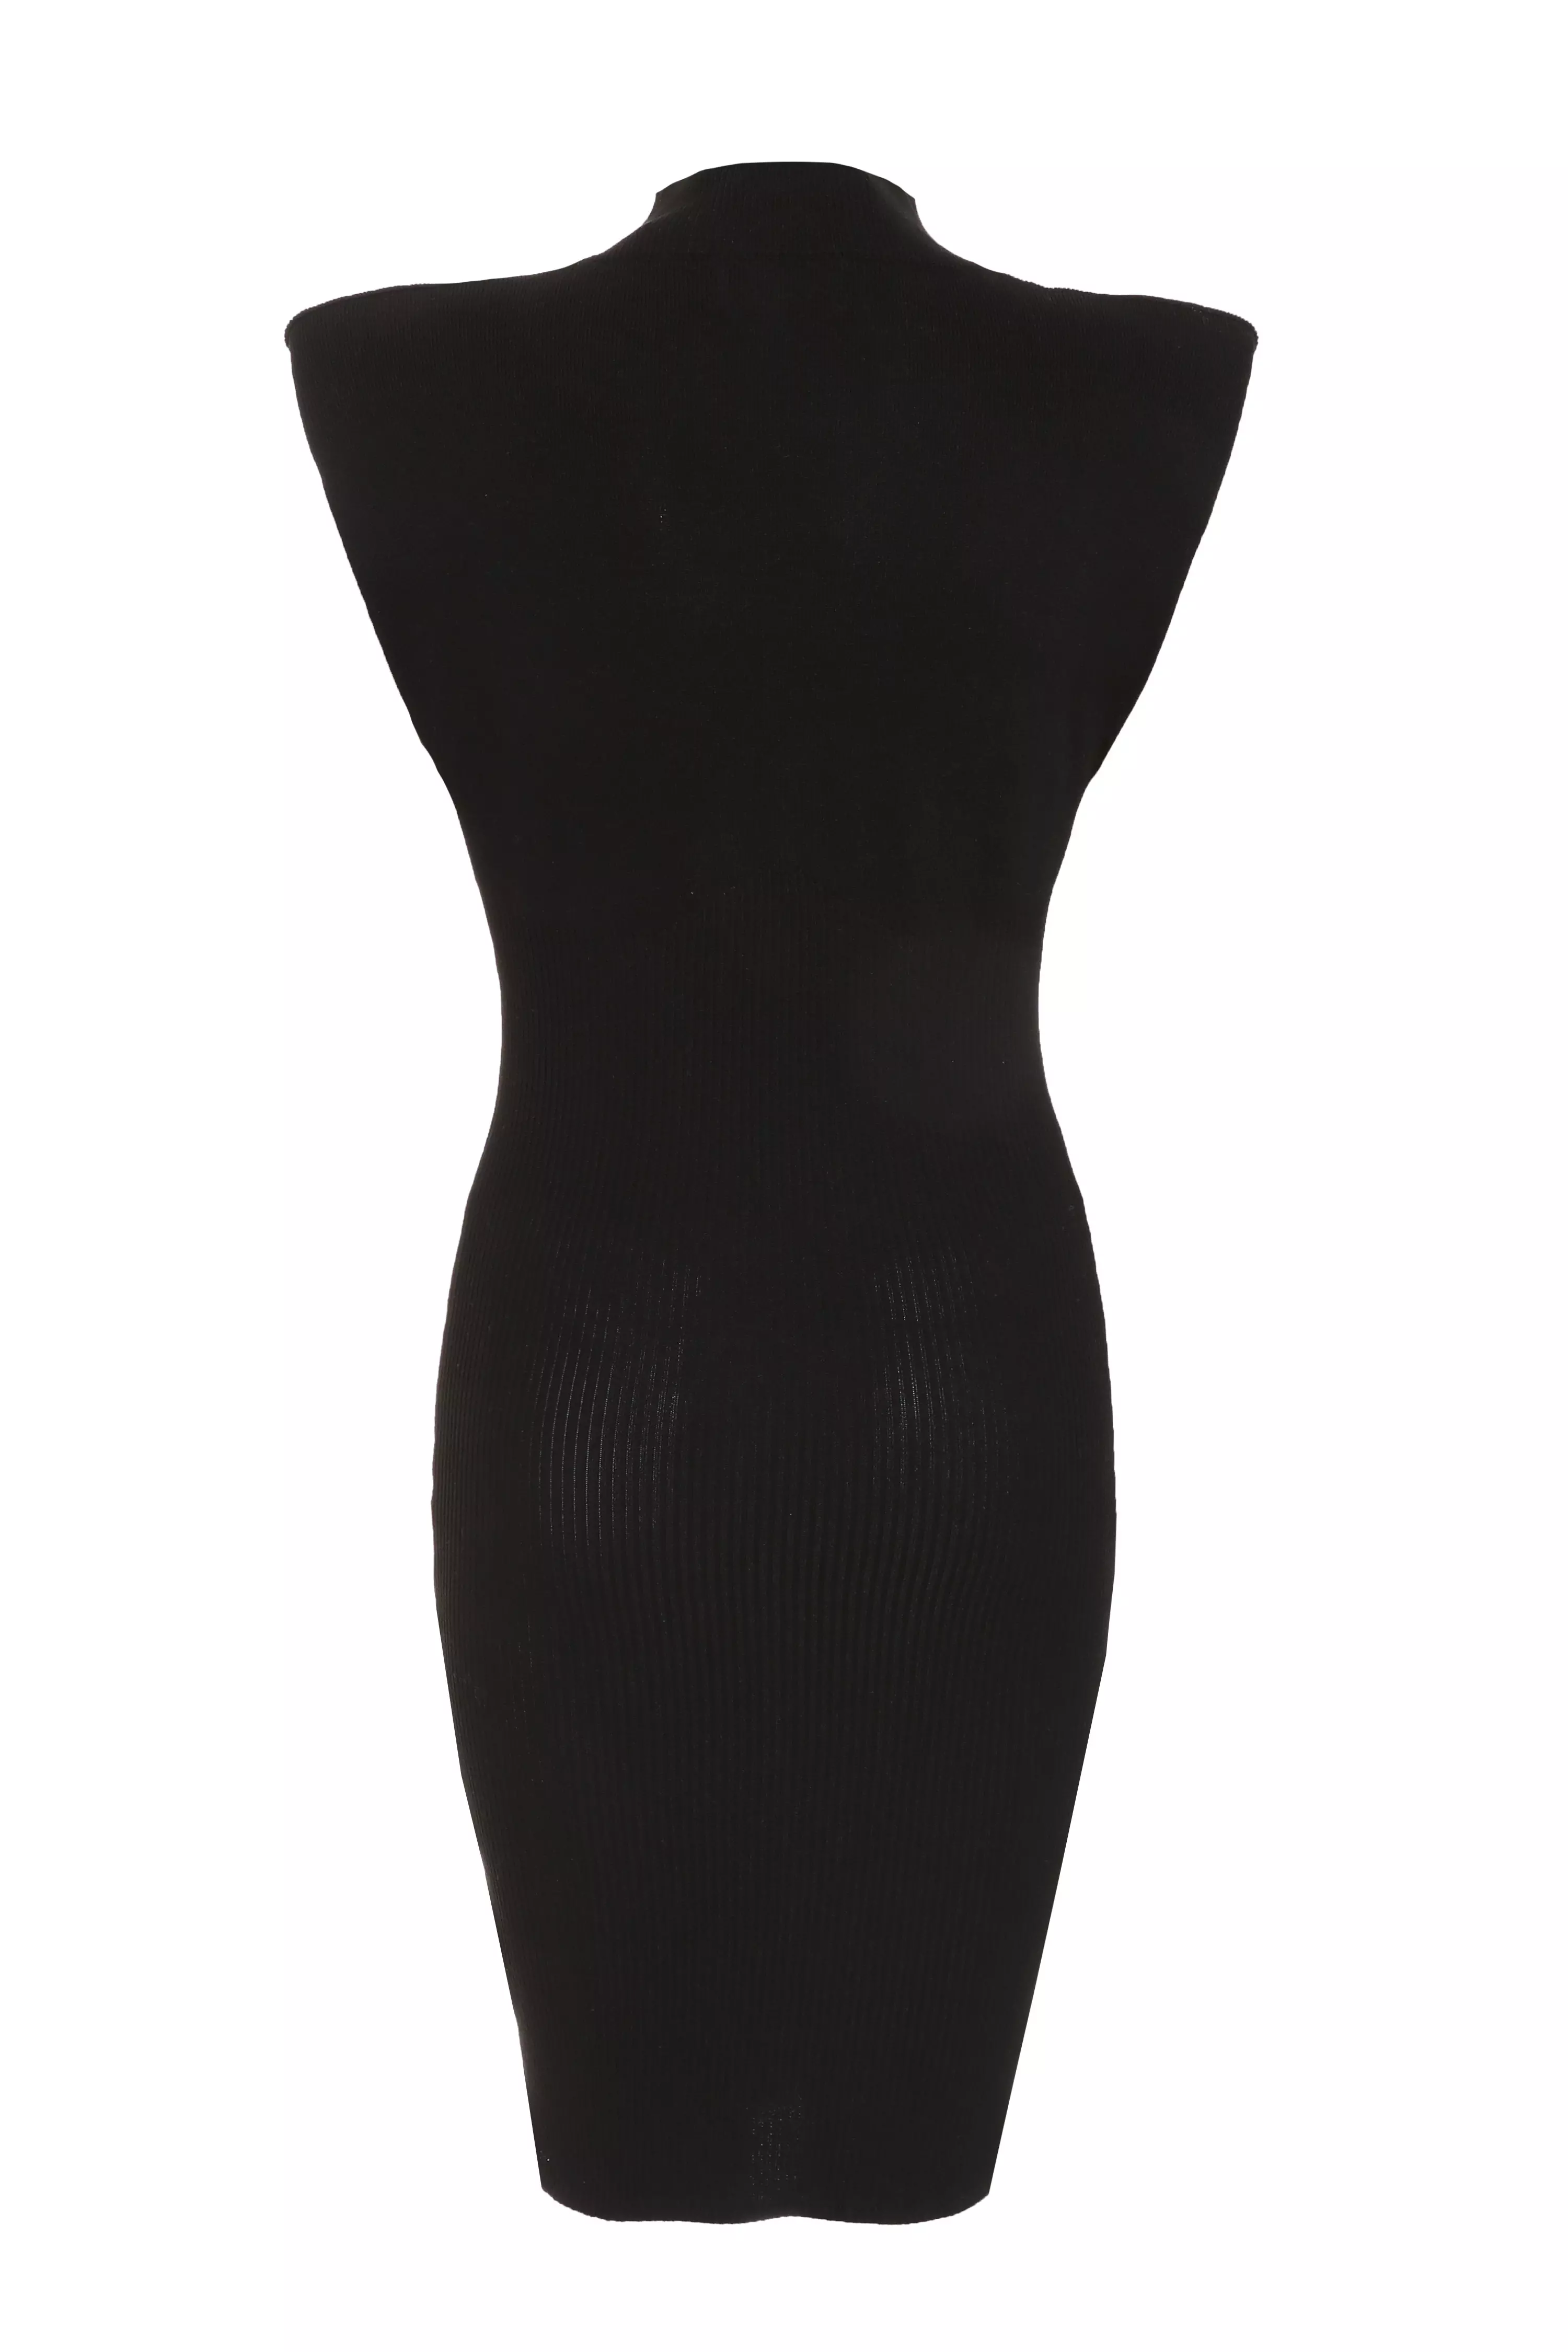 Black Knitted Vest Jumper Dress